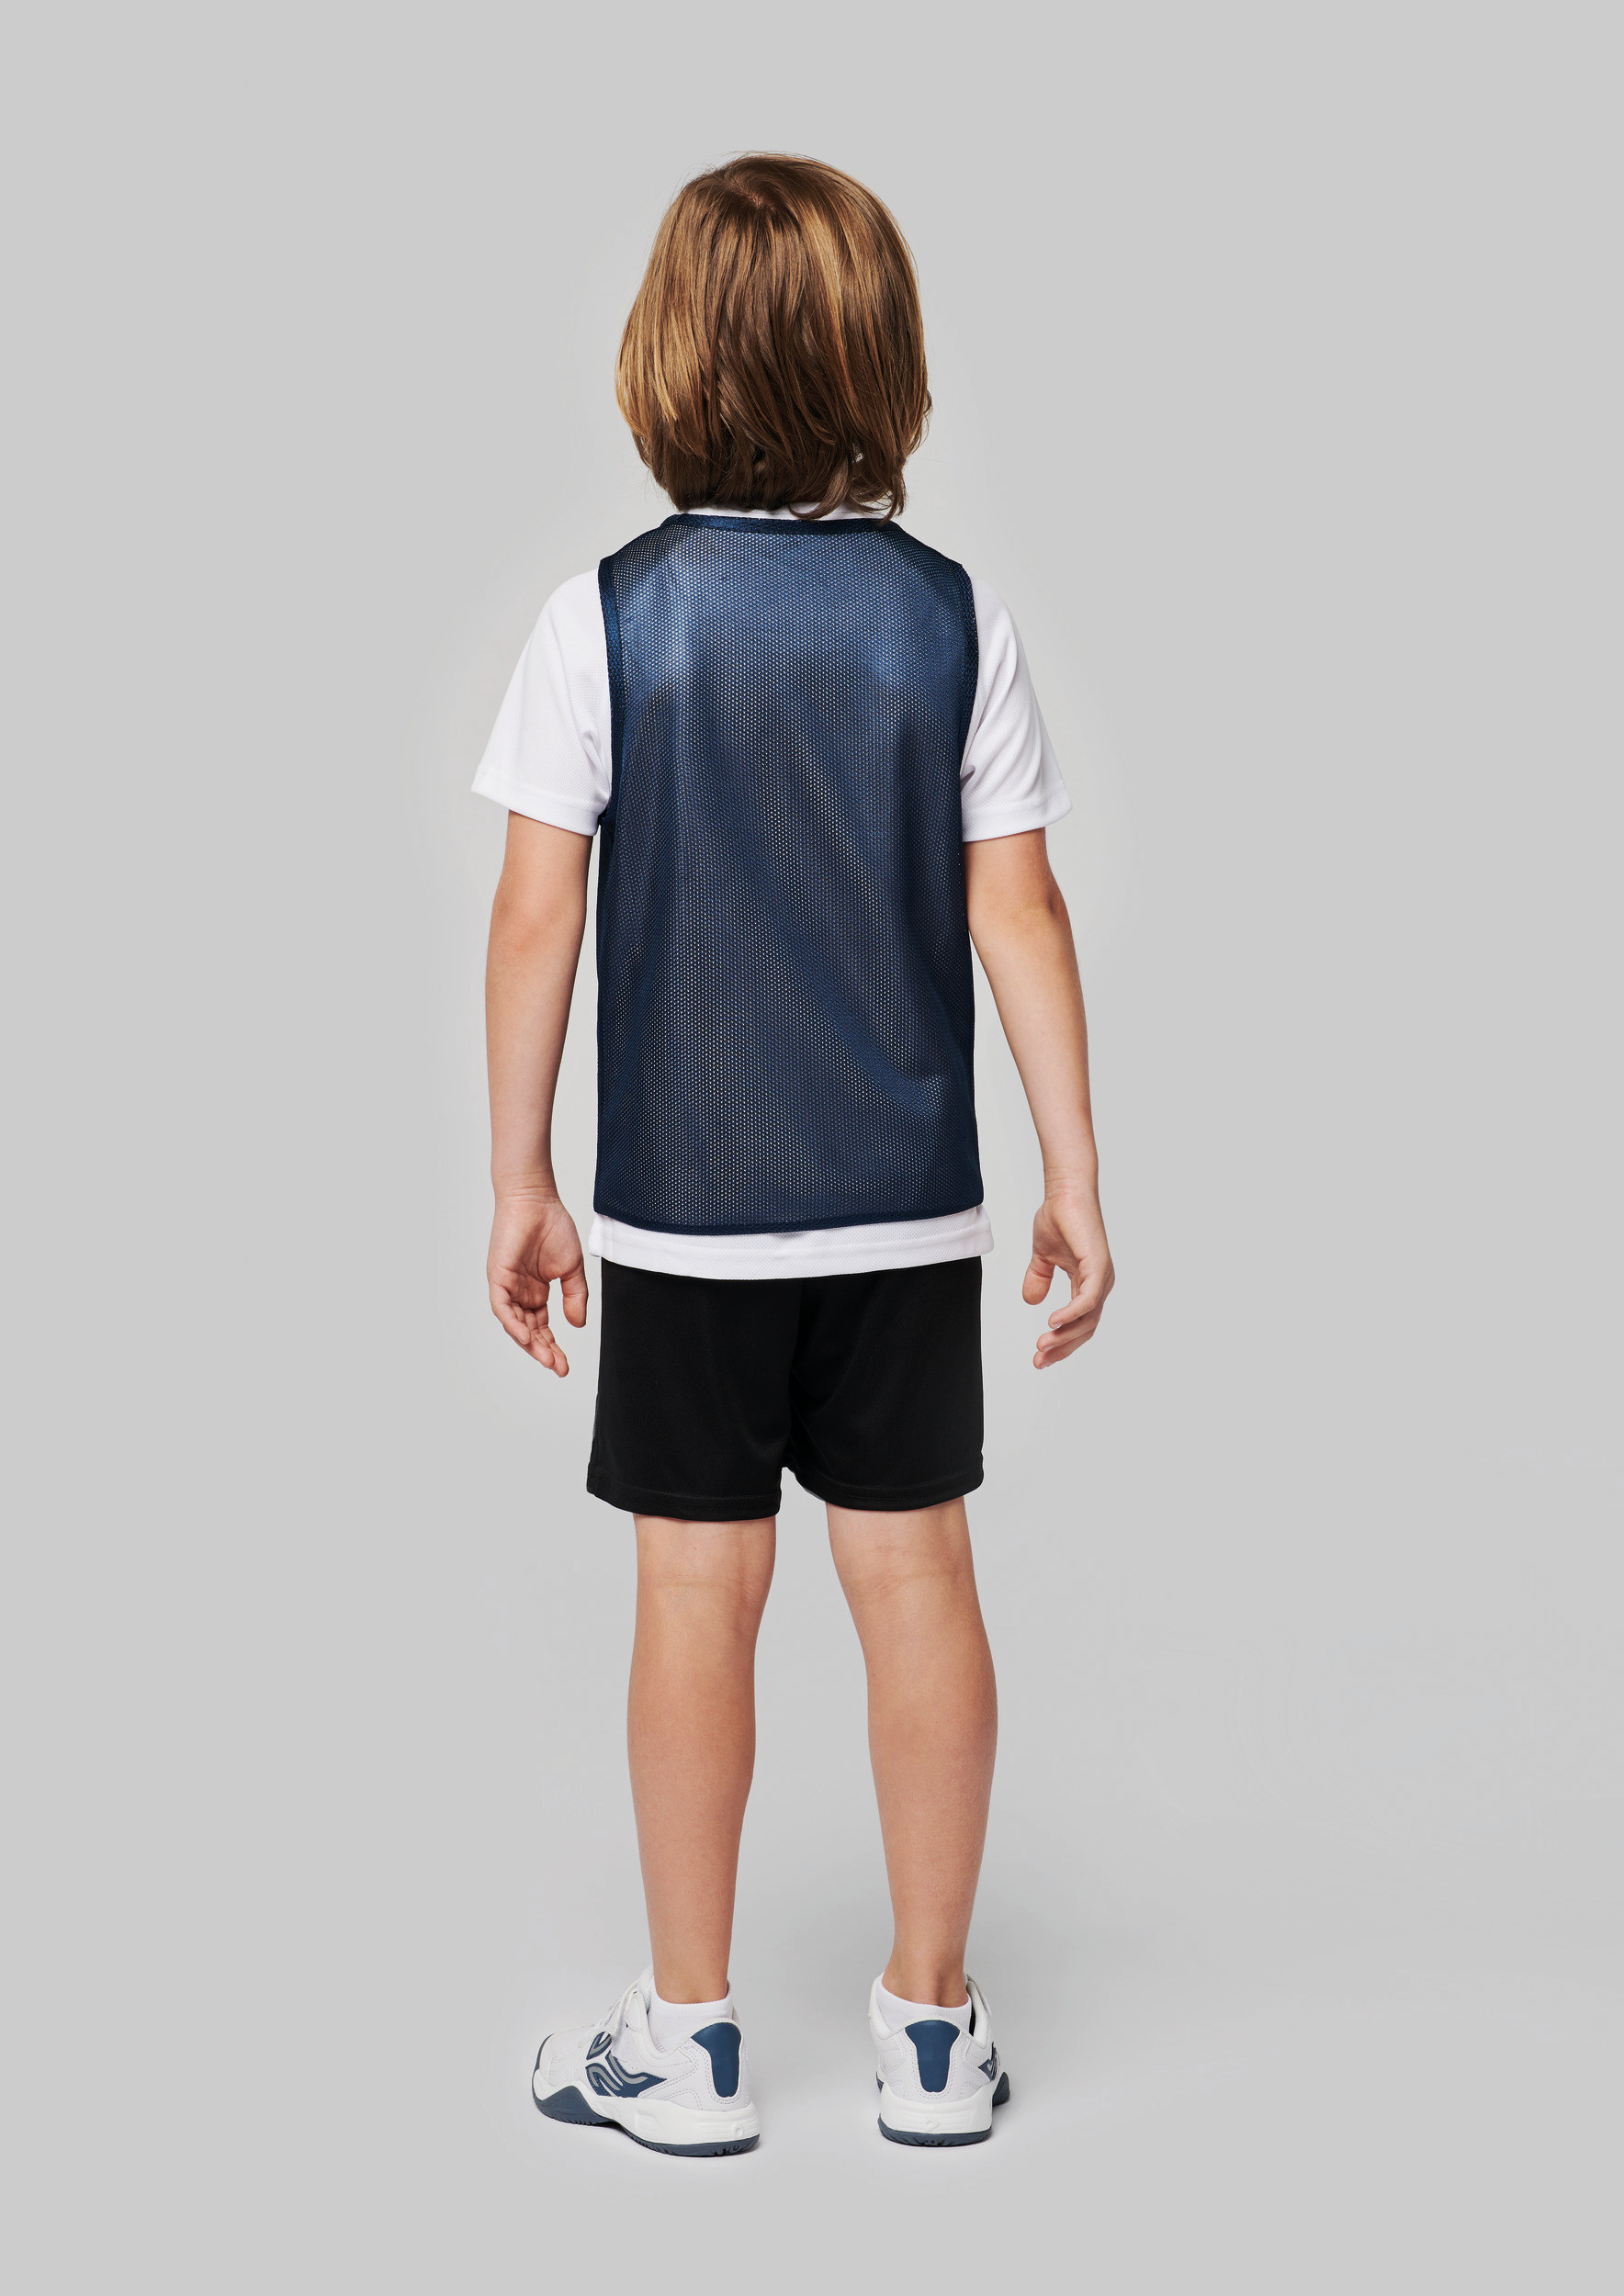 T-shirt PROACT Chasuble réversible multisports enfant PA048 à